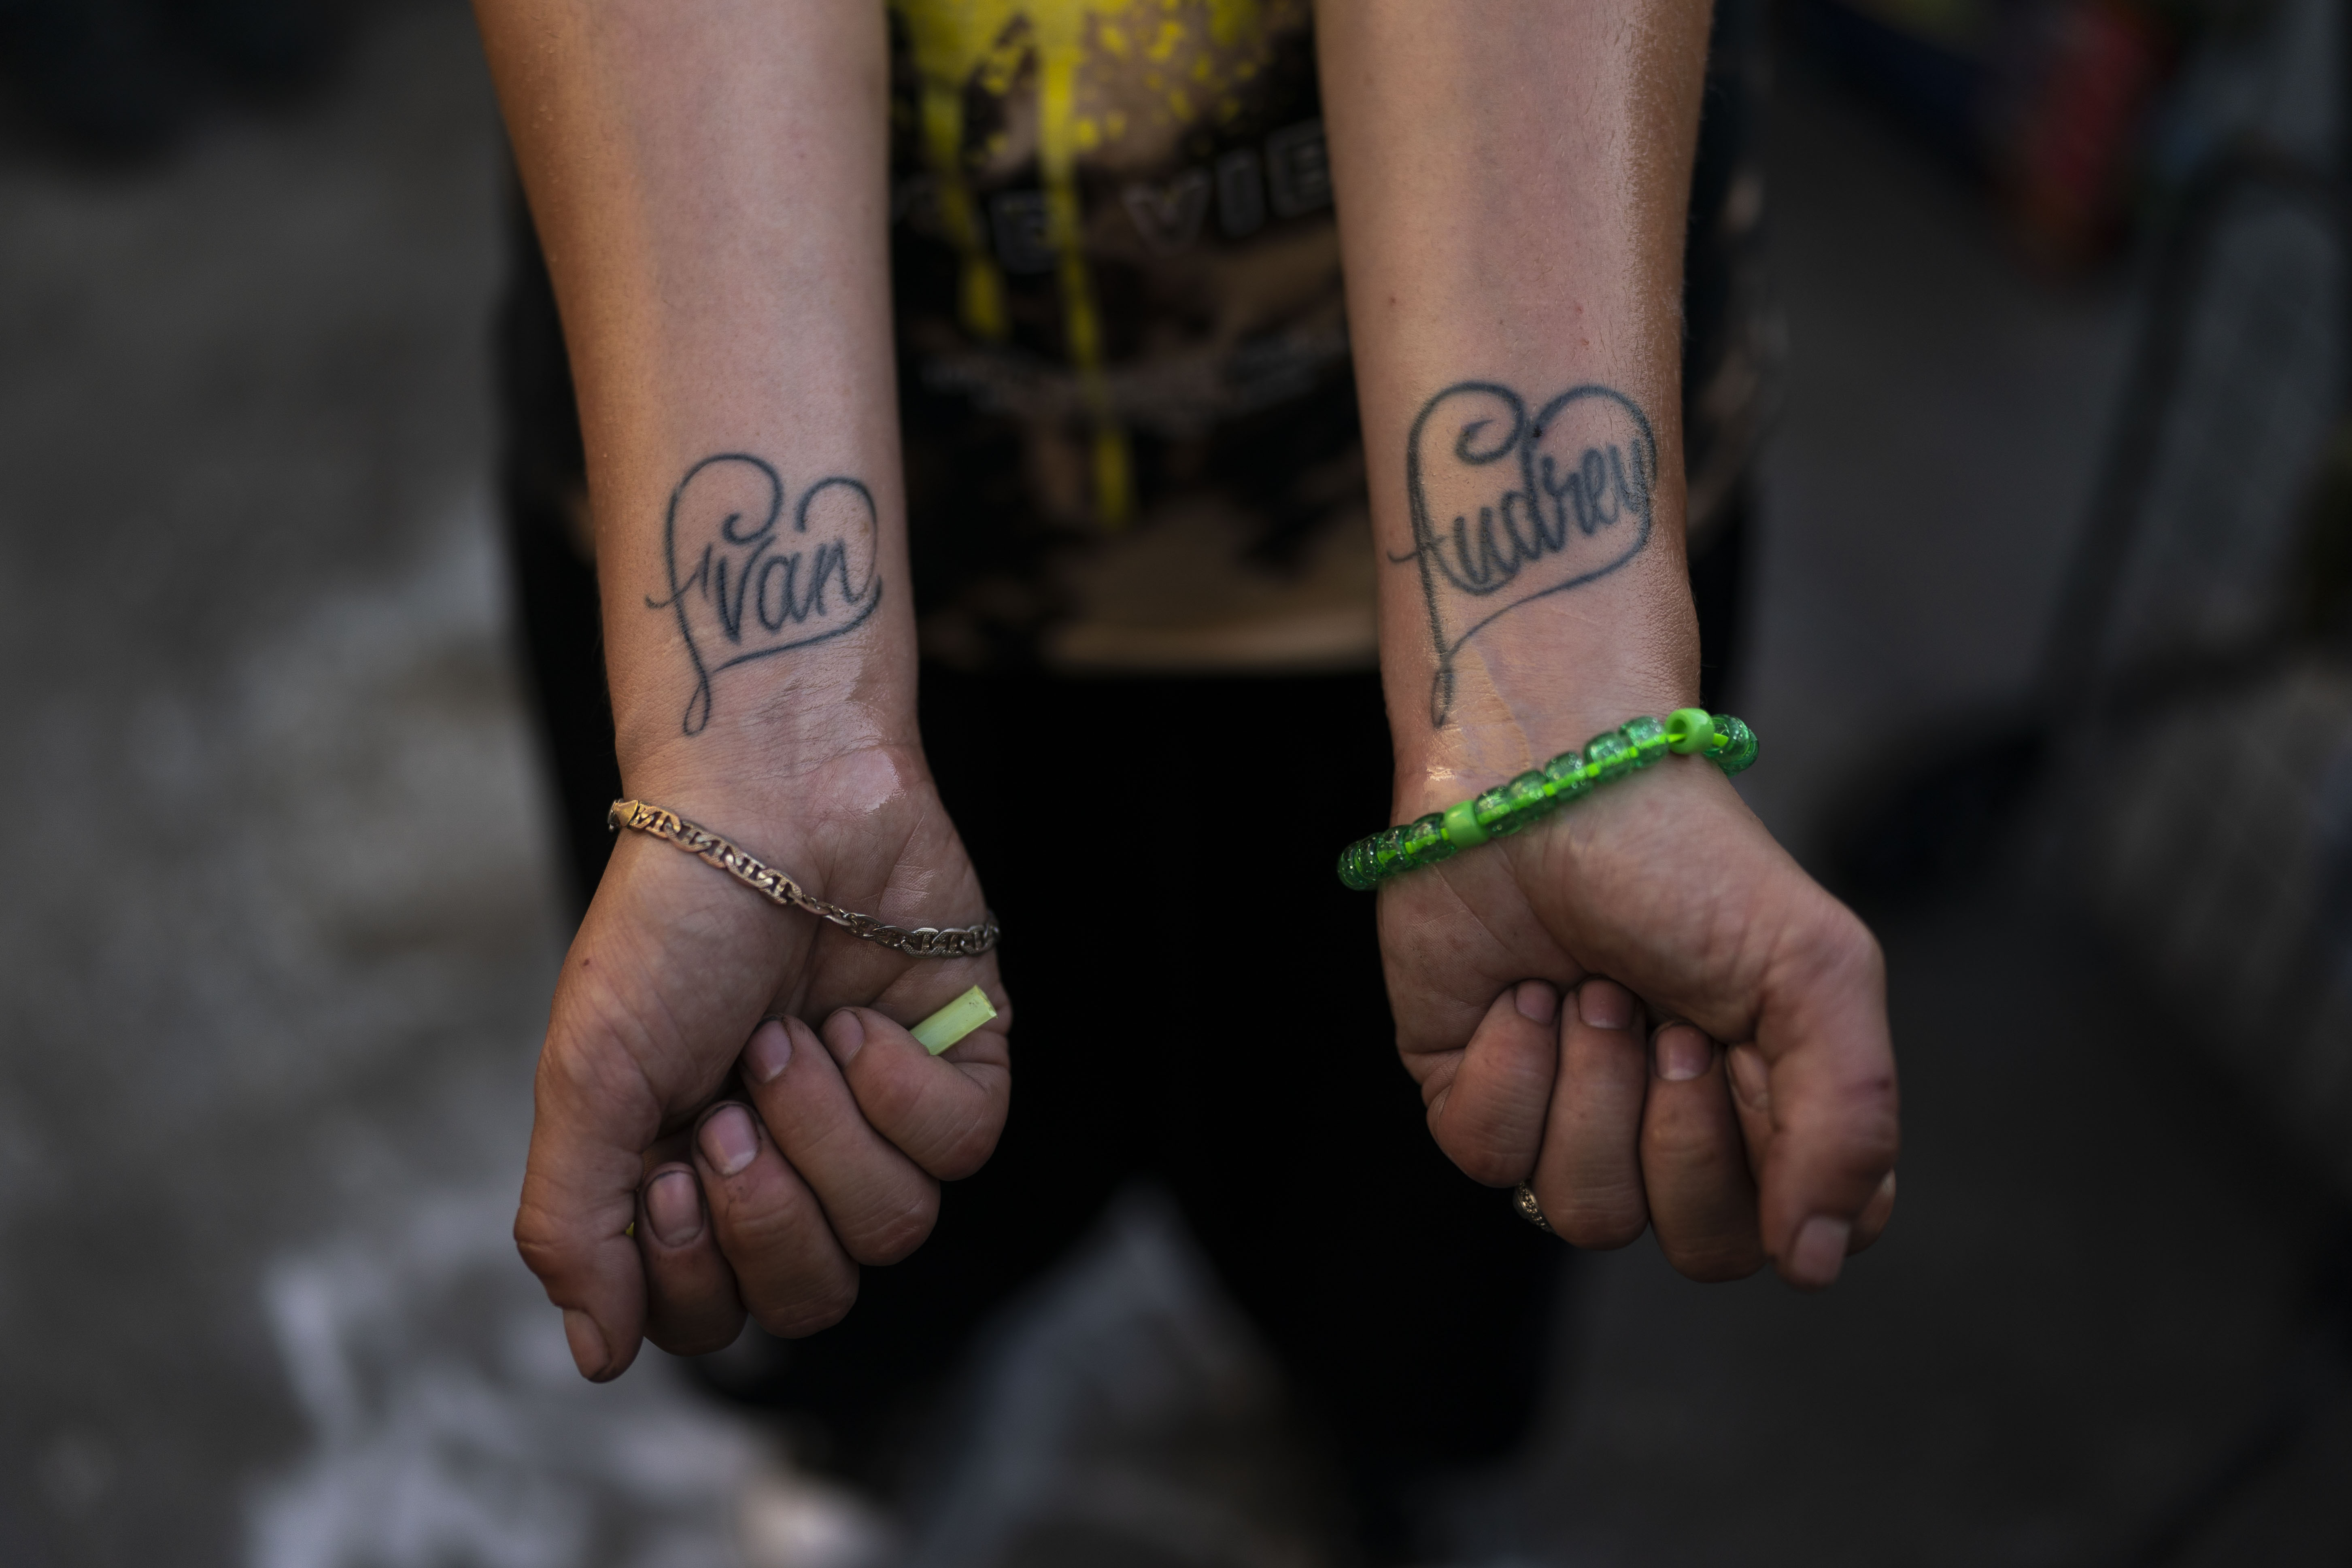 Jennifer Cataño, una adicta al fentanilo de 27 años, muestra tatuajes con los nombres de sus dos hijos, Evan y Audrey (AP Foto/Jae C. Hong)